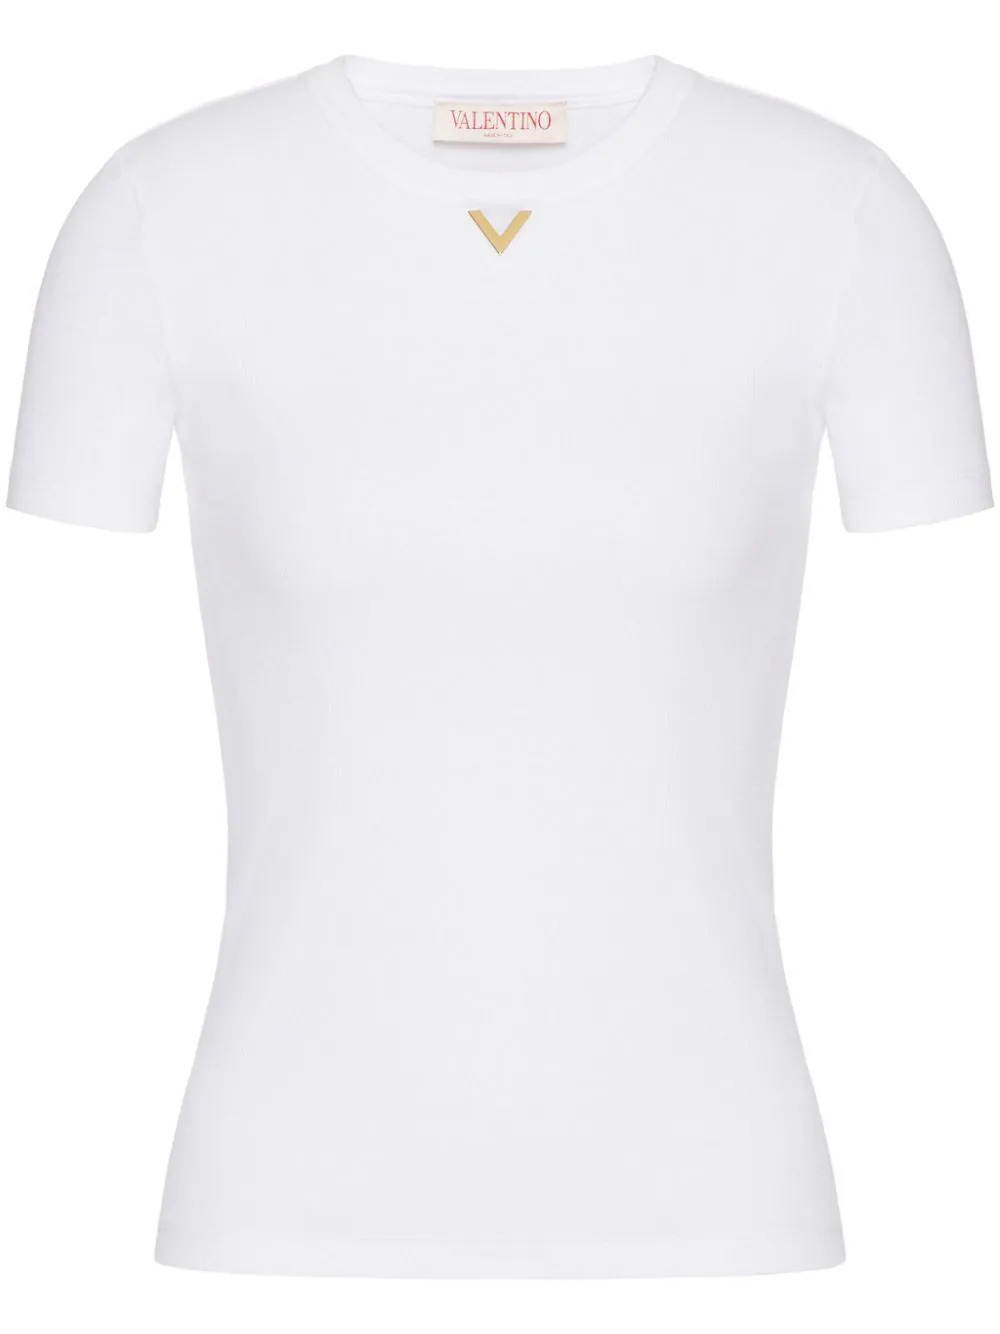 VGold T-shirt